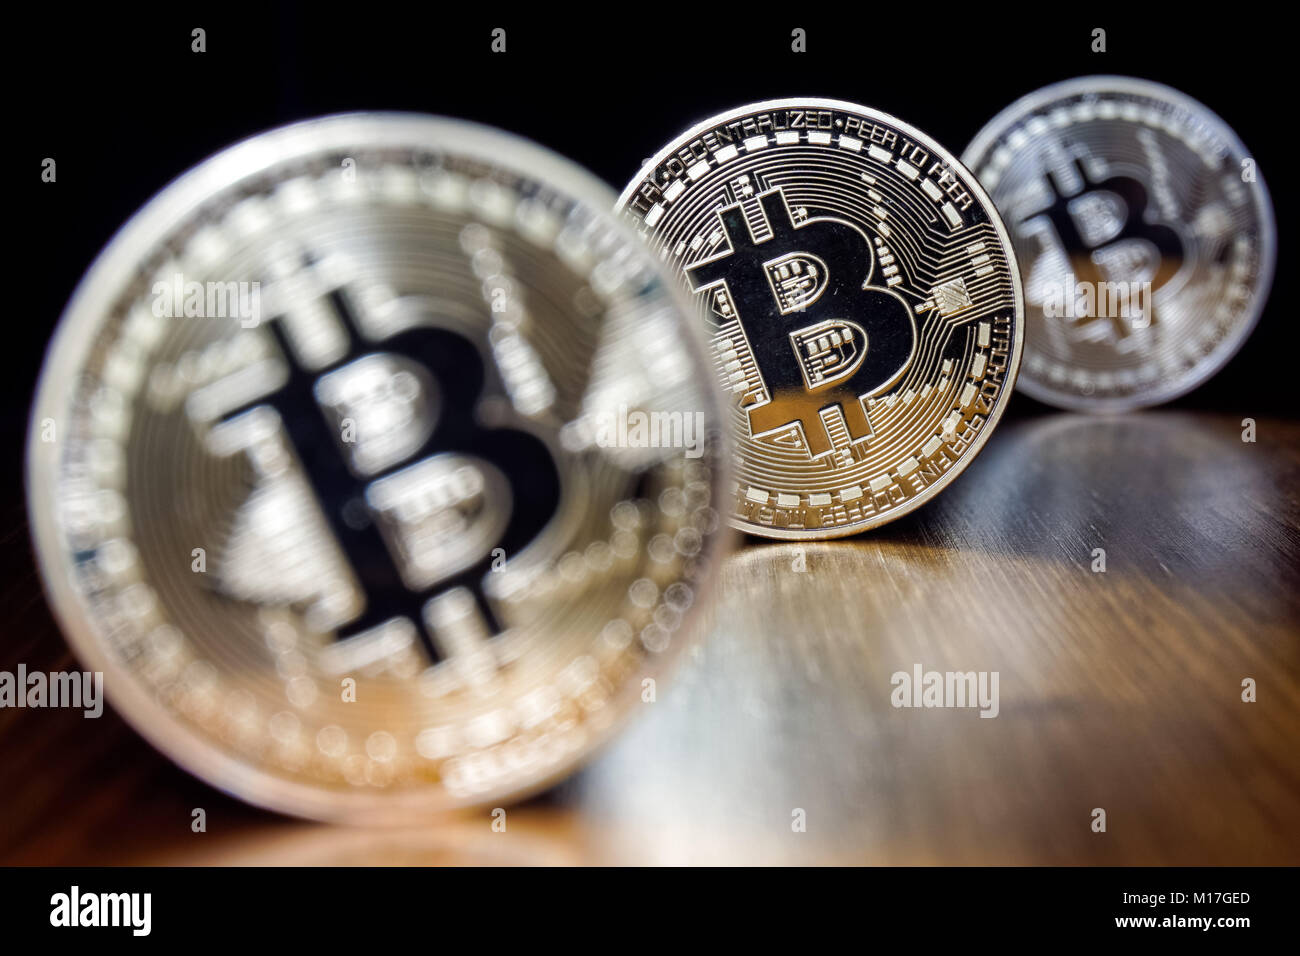 Bitcoin cryptocurrency monete su sfondo nero Foto Stock